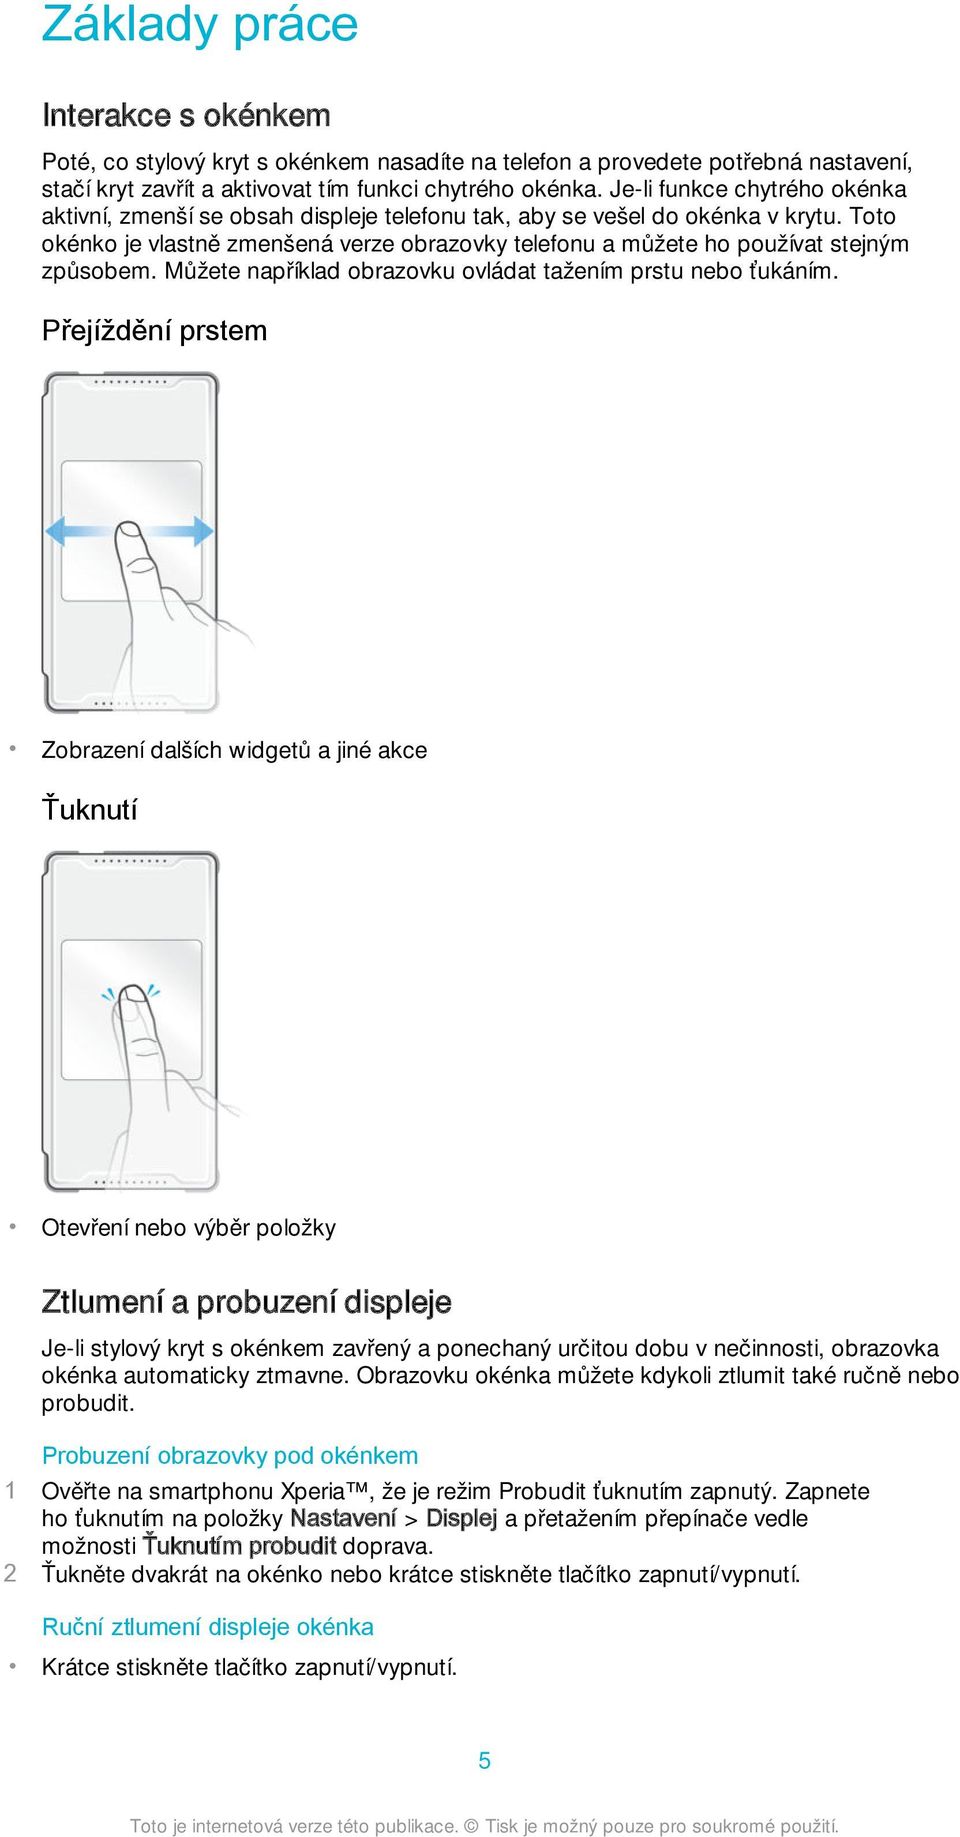 Toto okénko je vlastně zmenšená verze obrazovky telefonu a můžete ho používat stejným způsobem. Můžete například obrazovku ovládat tažením prstu nebo ťukáním.